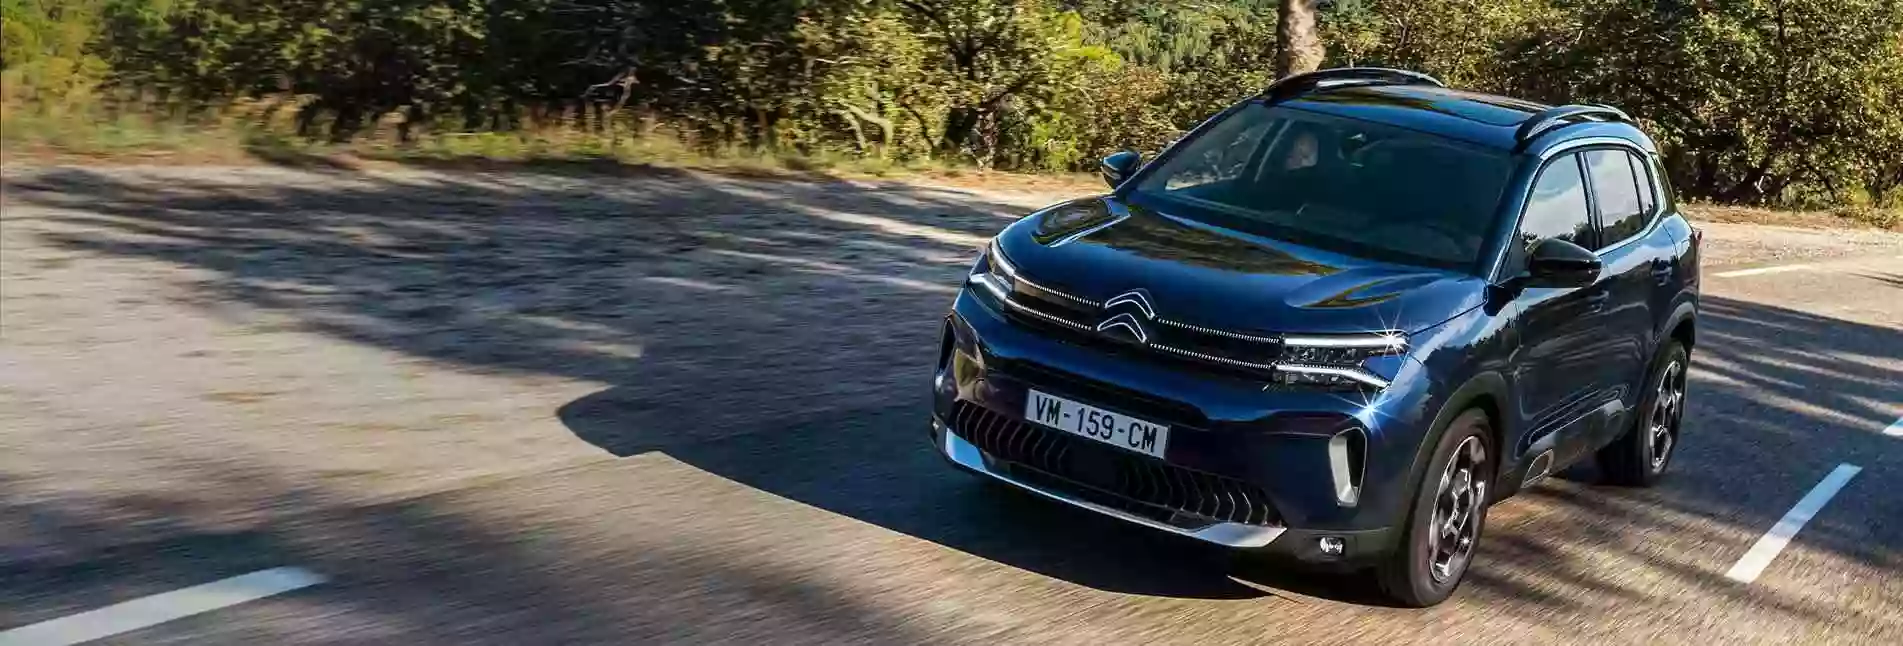 Citroën dealer